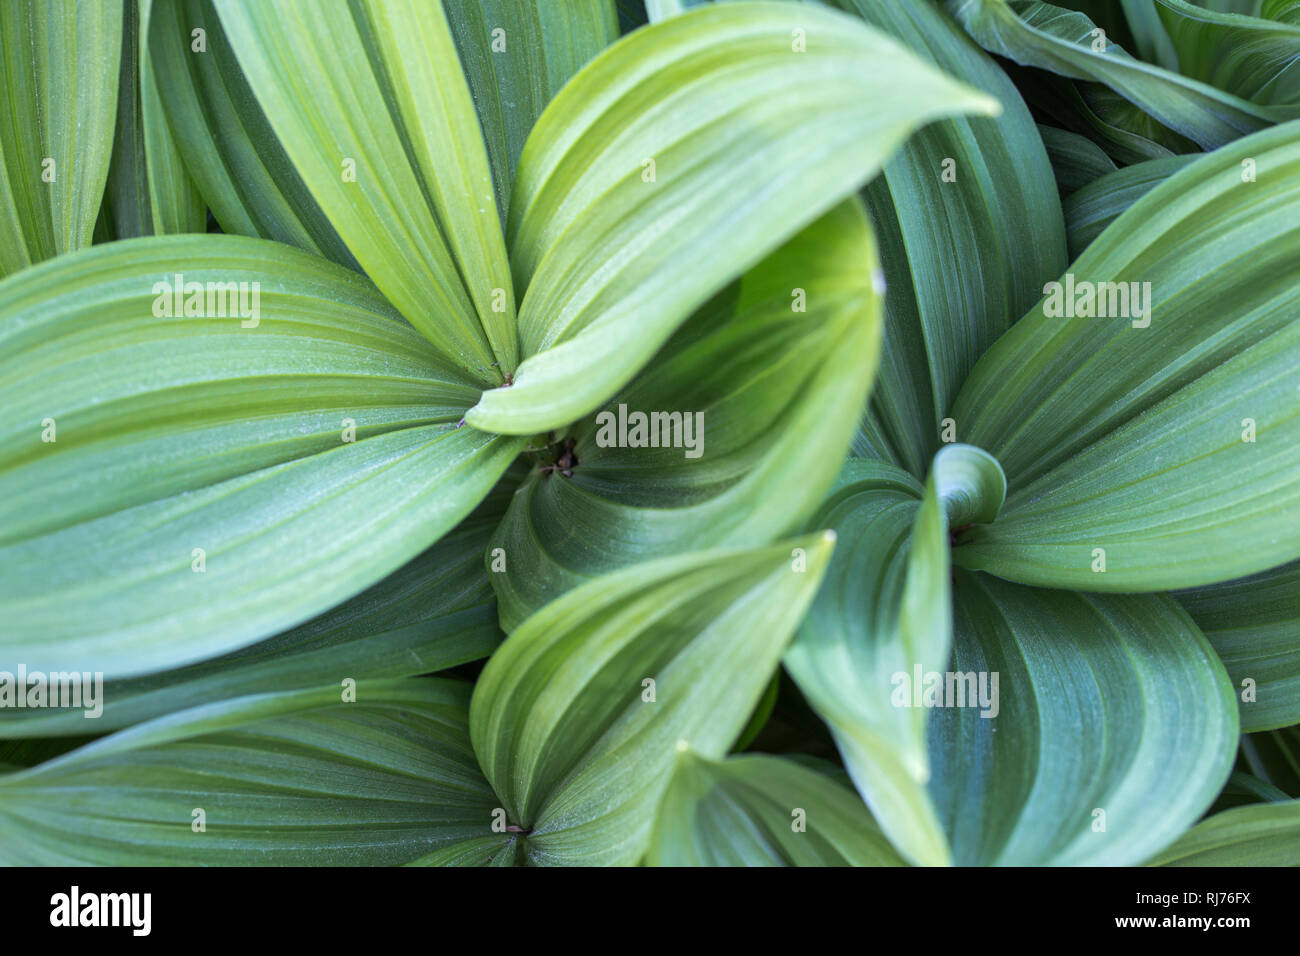 Zierpflanze, gestreifte Blätter in unterschiedlichen Grüntönen, Muster, Hintergrund, Stockfoto